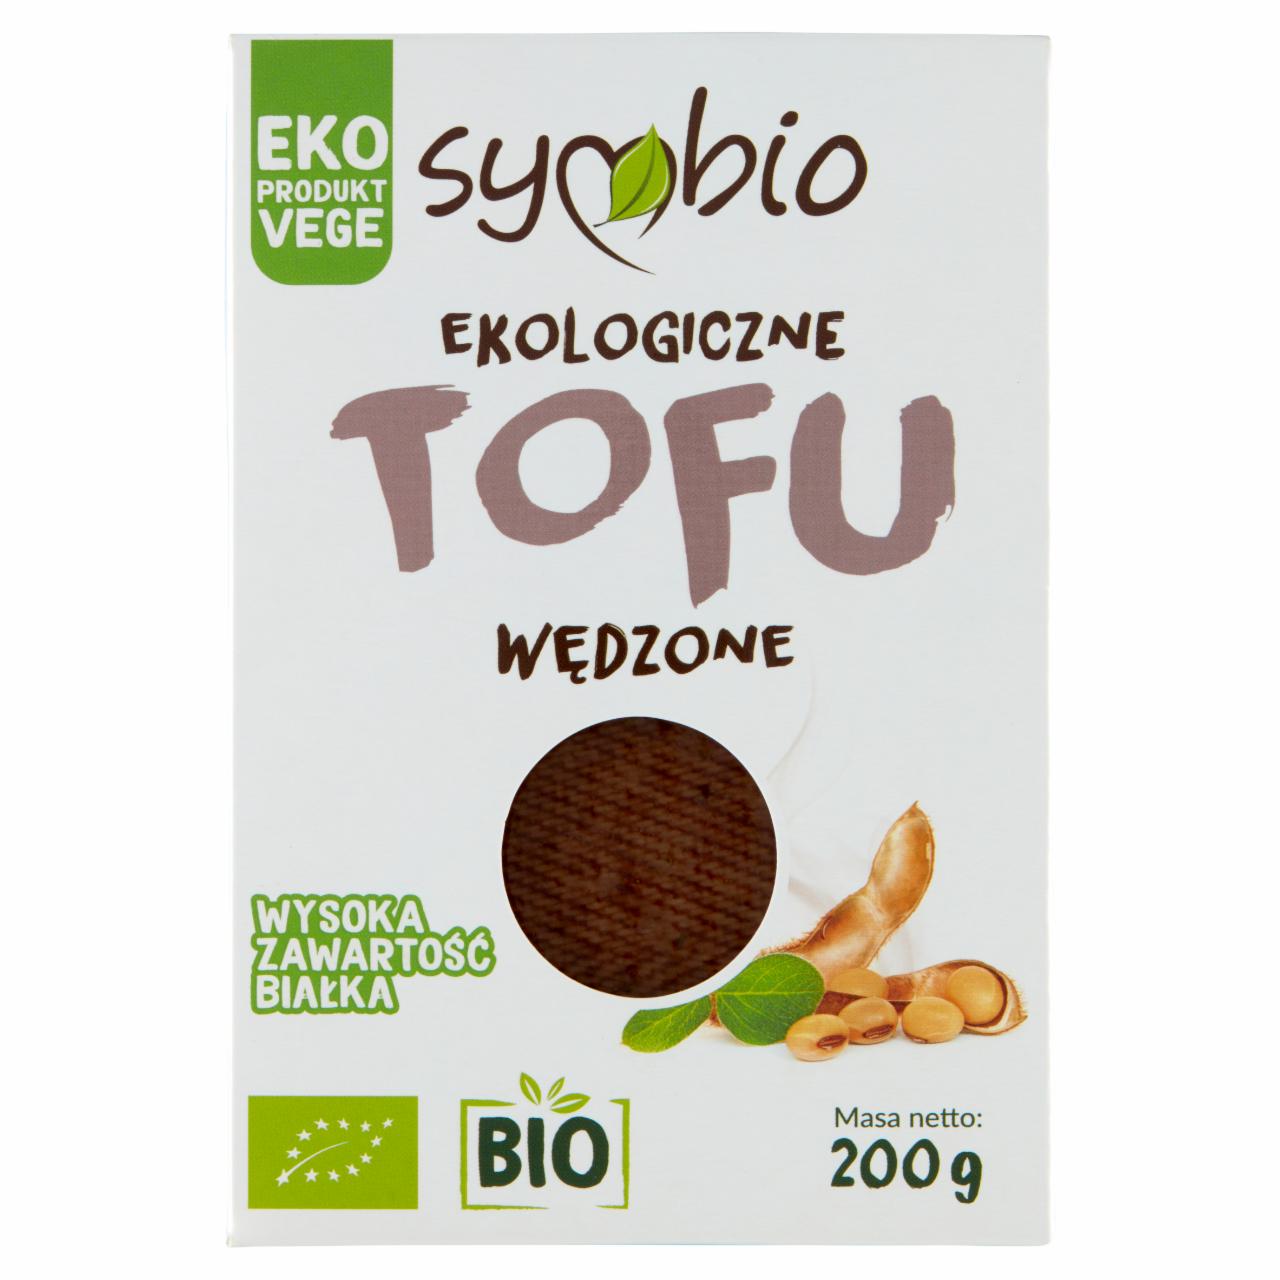 Zdjęcia - Symbio Ekologiczne tofu wędzone 200 g